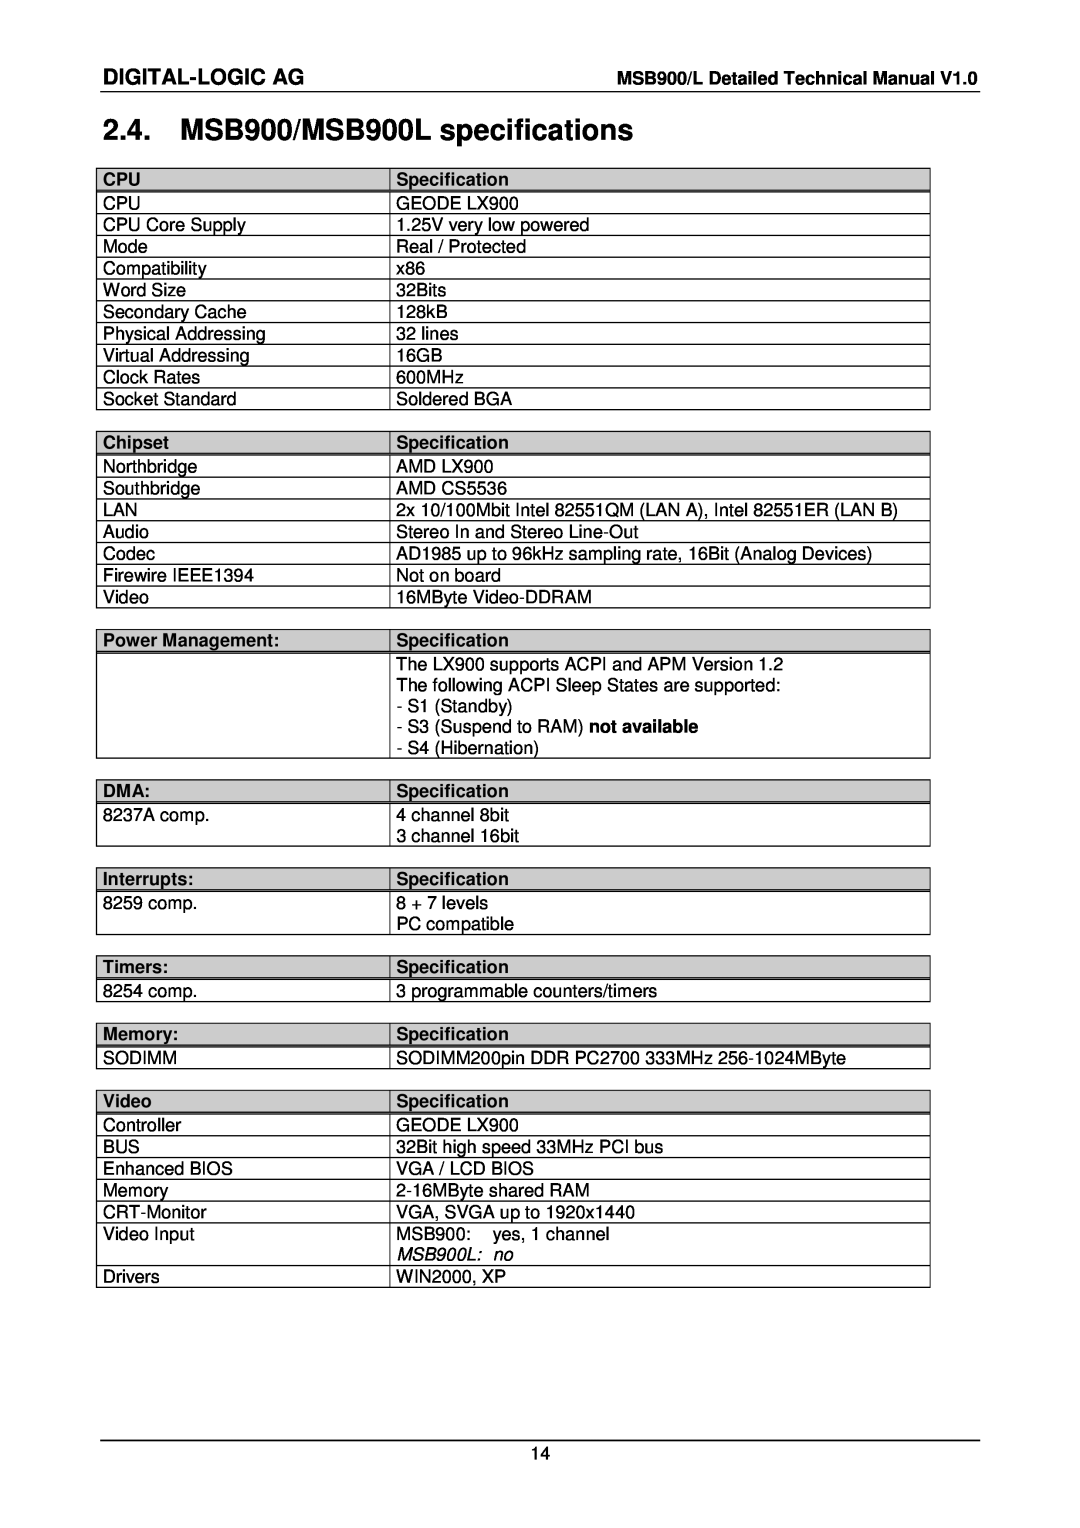 Compaq user manual MSB900/MSB900L specifications, Digital-Logic Ag, MSB900L no 